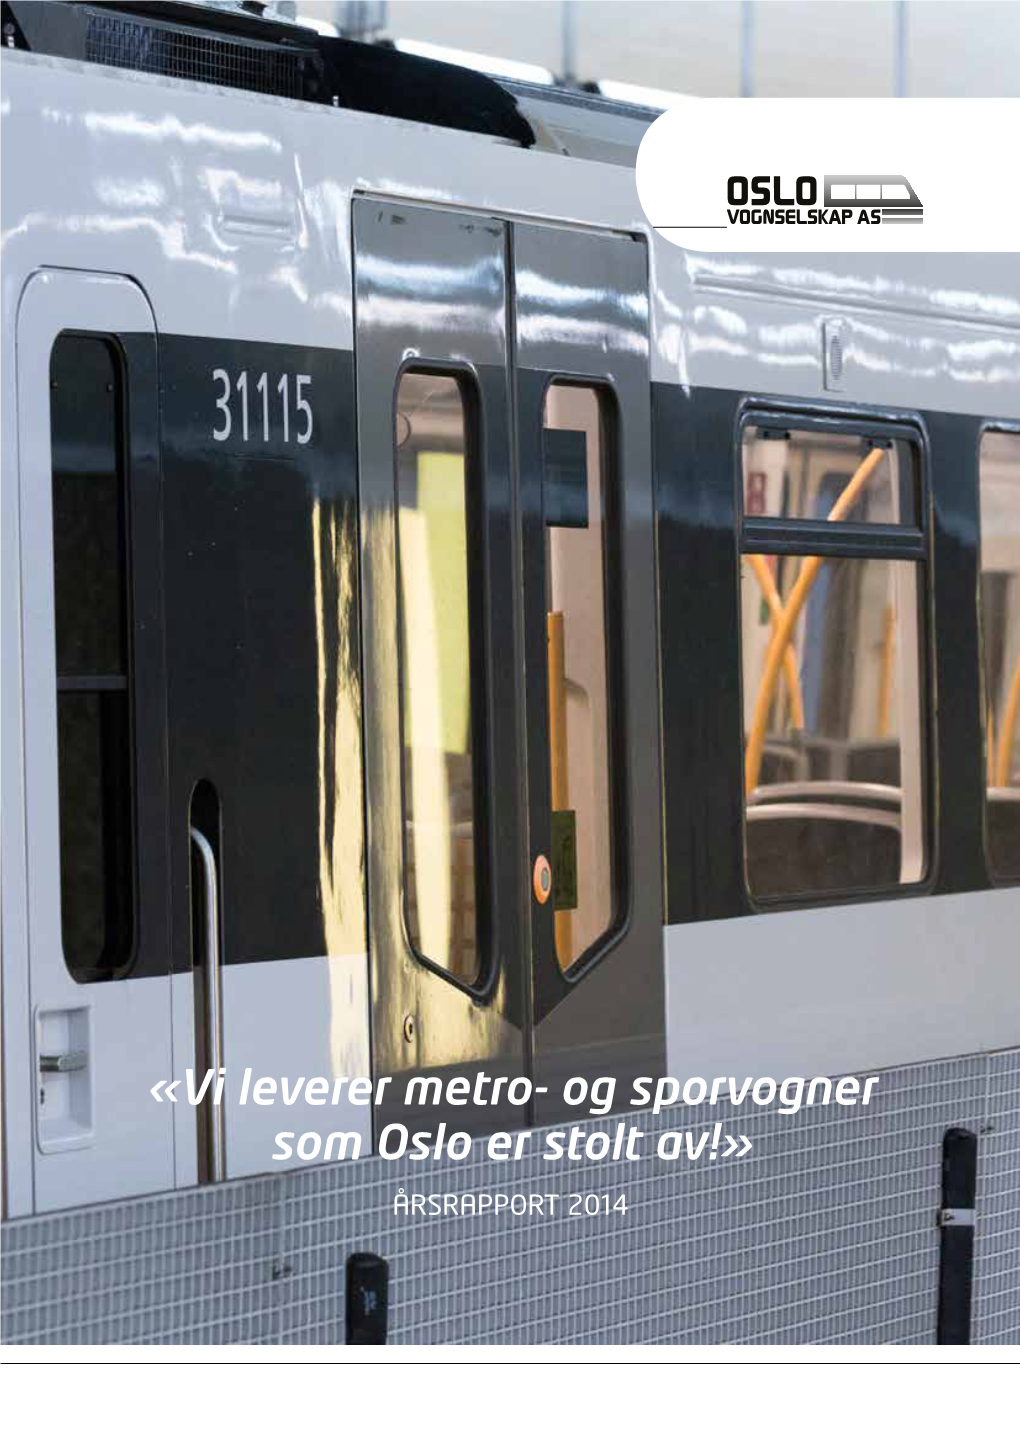 «Vi Leverer Metro- Og Sporvogner Som Oslo Er Stolt Av!»